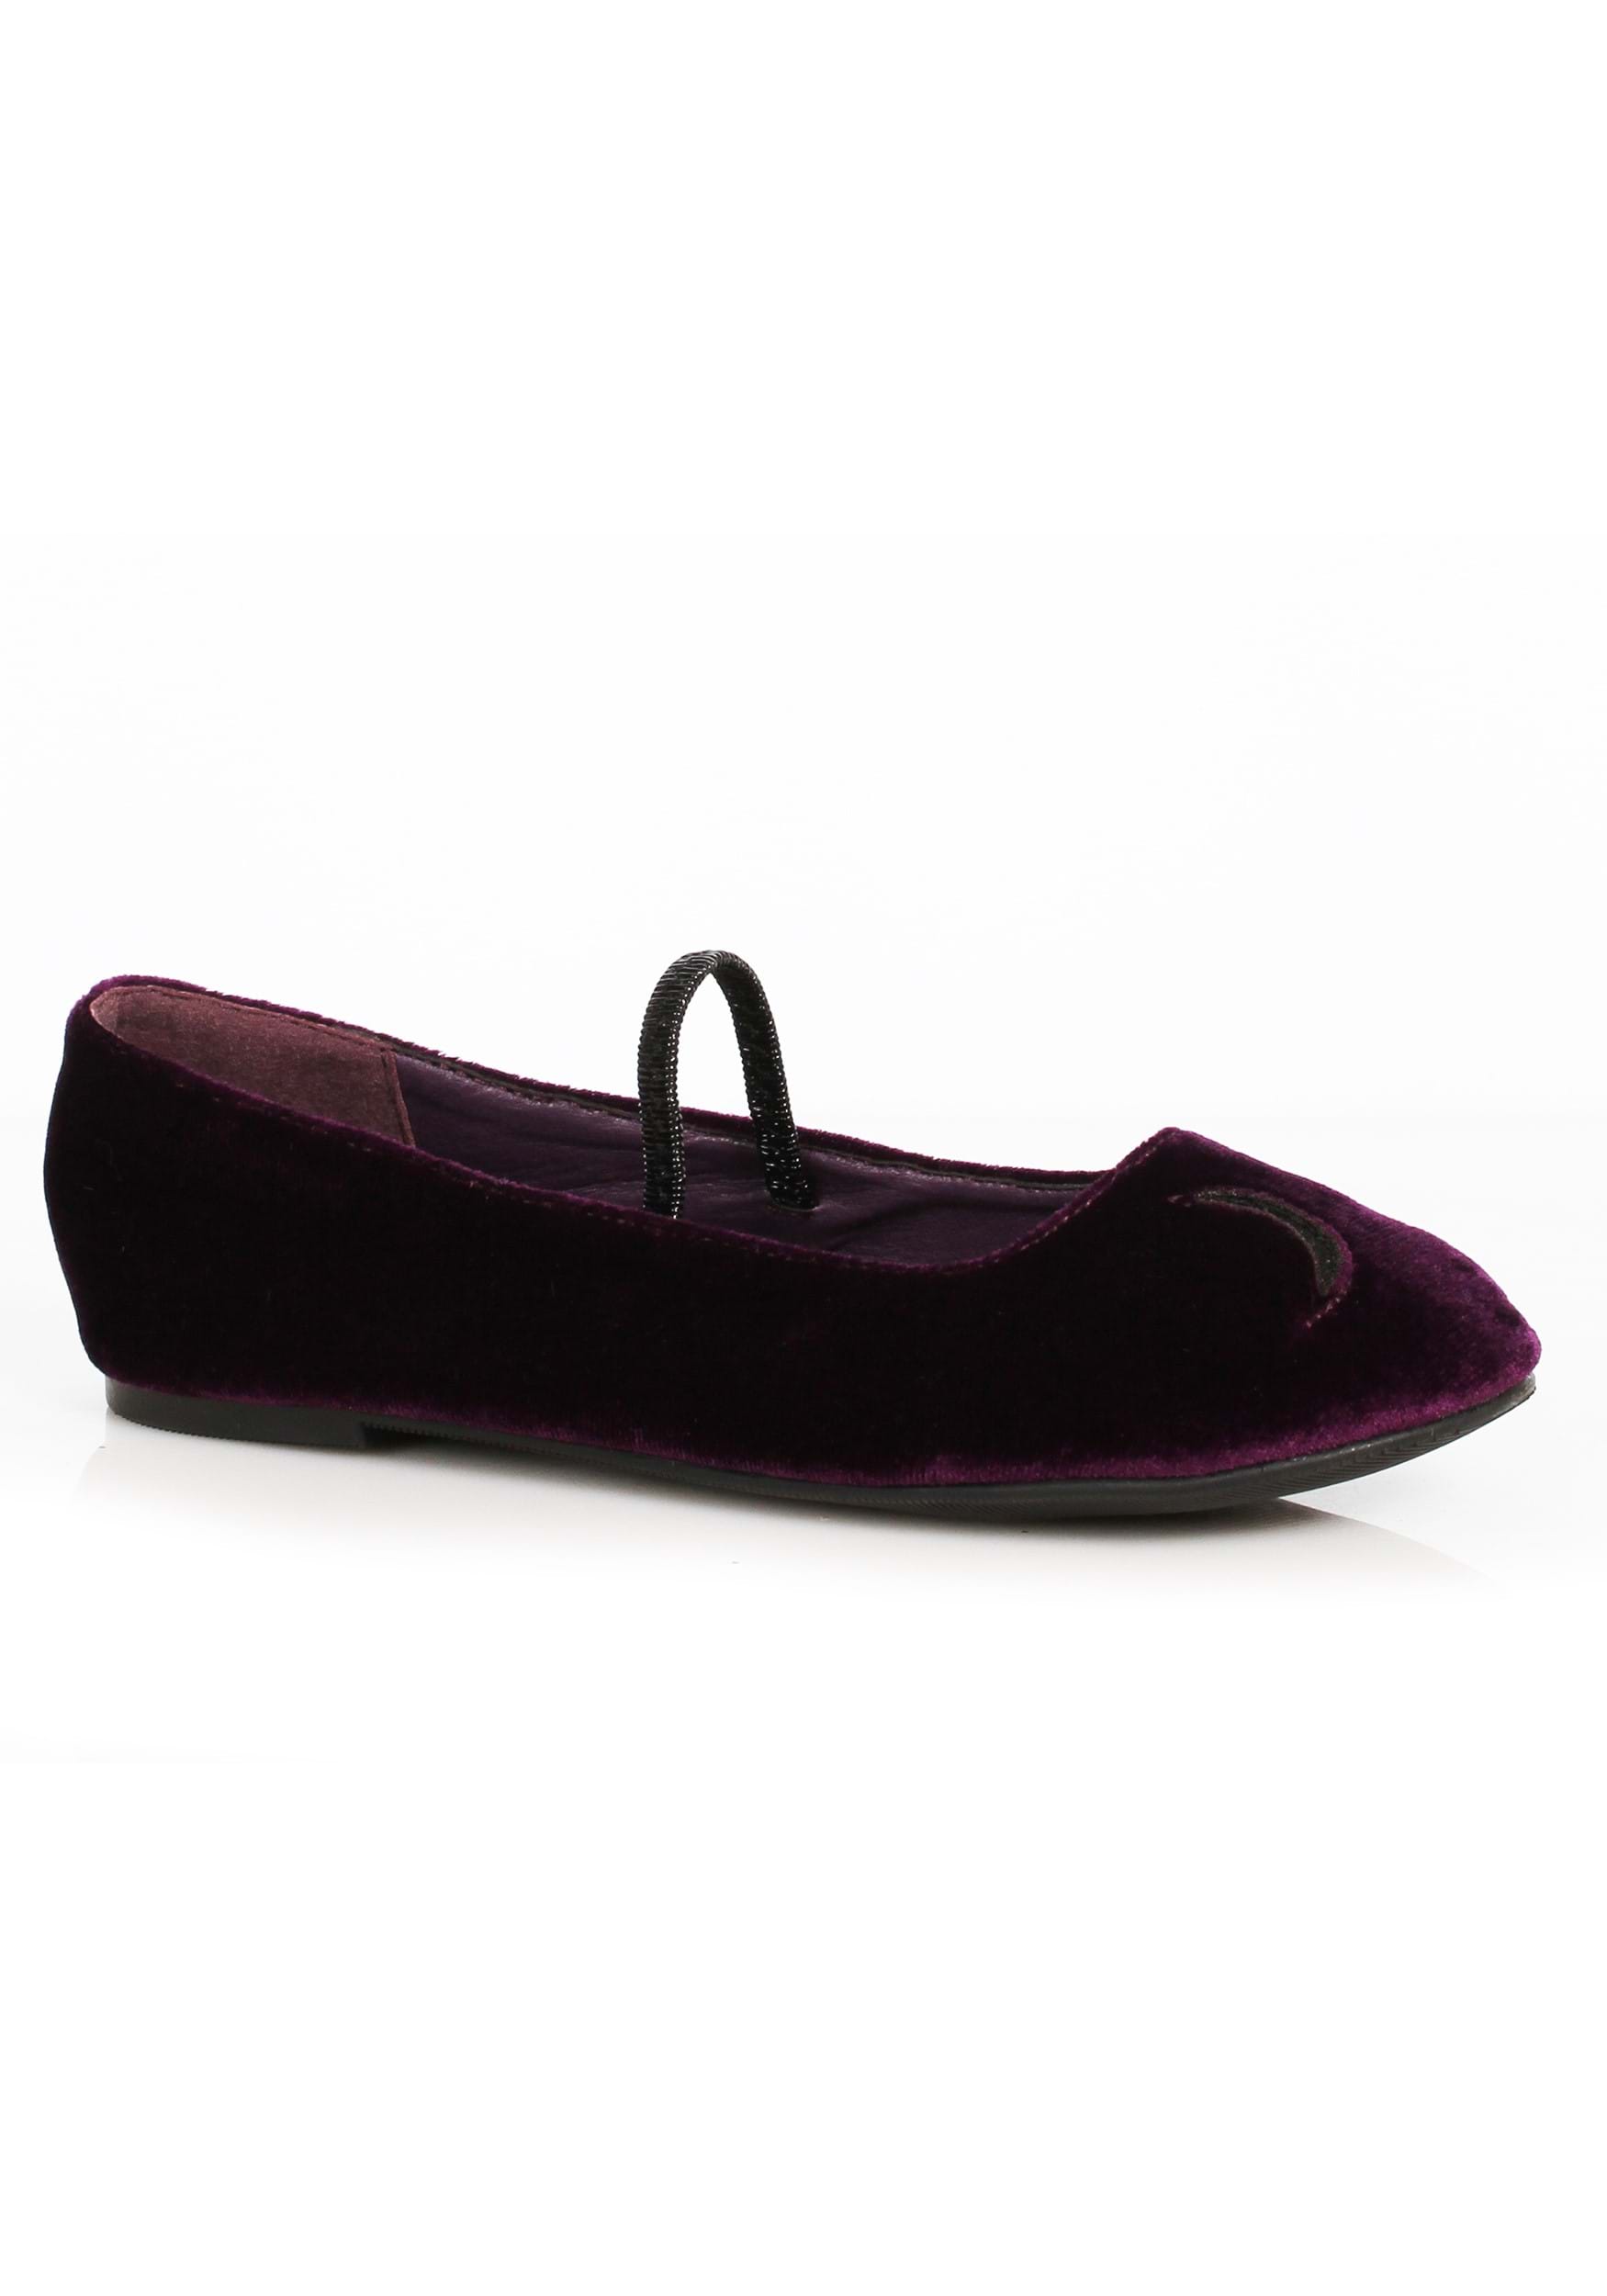 Niñas Púrpura Crescent Witch Ballet zapatos planos Multicolor